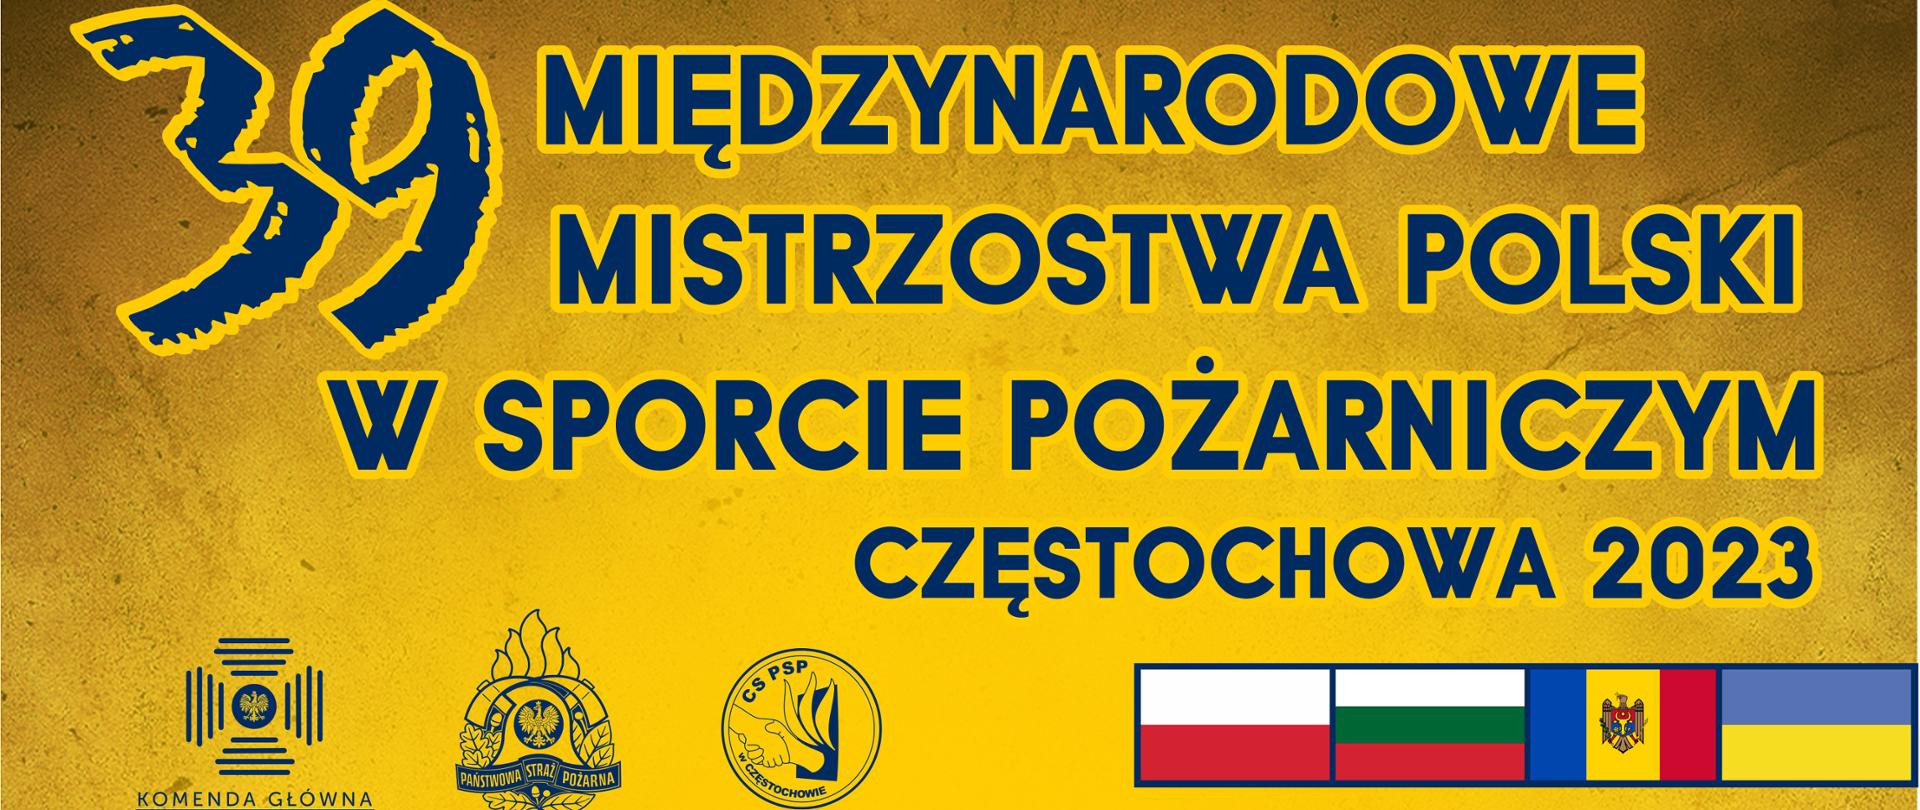 Plakat 39 Mistrzostw Polski w Sporcie Pożarniczym, na górze nazwa wydarzenia, po lewej stronie na dole logo Komendy Głównej PSP, logo PSP oraz logo Centralnej Szkoły PSP, po prawej stronie na dole flagi uczestników tj. Polski, Bułgarii, Mołdawii oraz Ukrainy